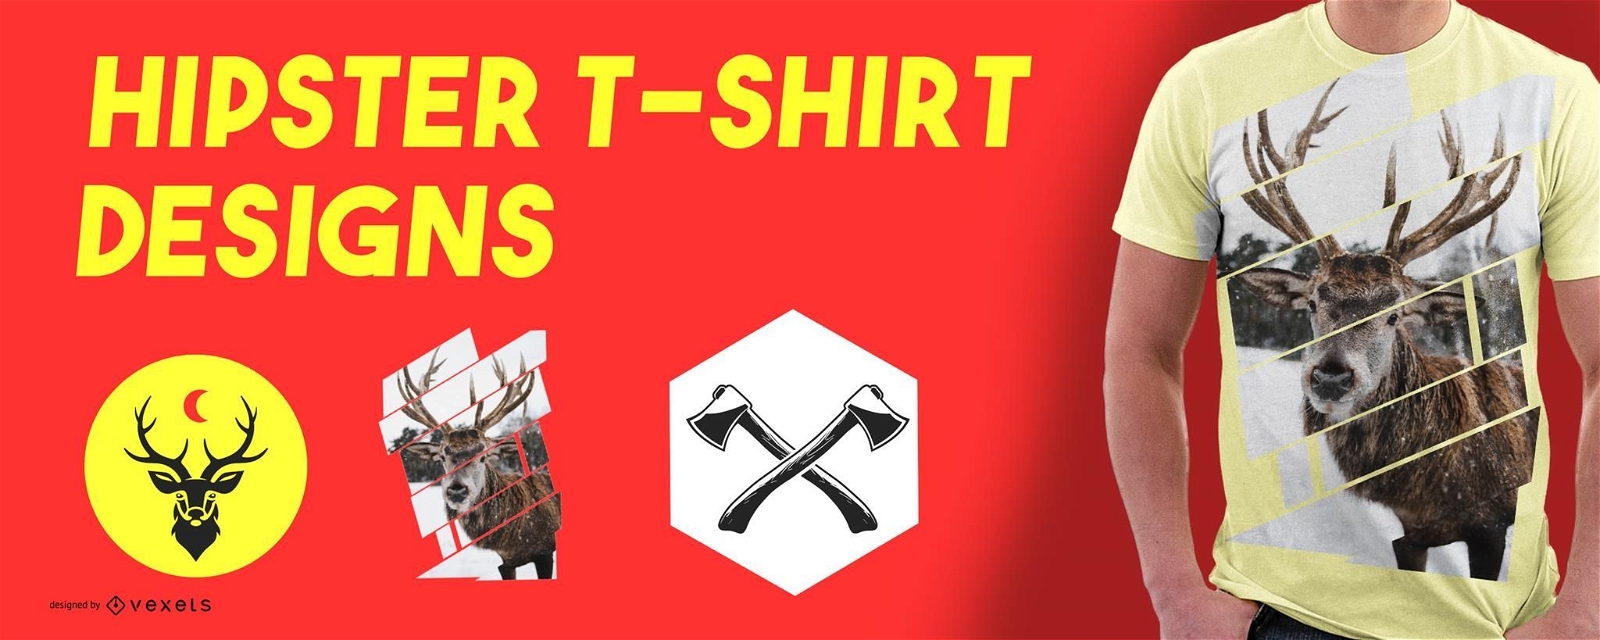 Conjunto de design de camisetas com elementos hipster